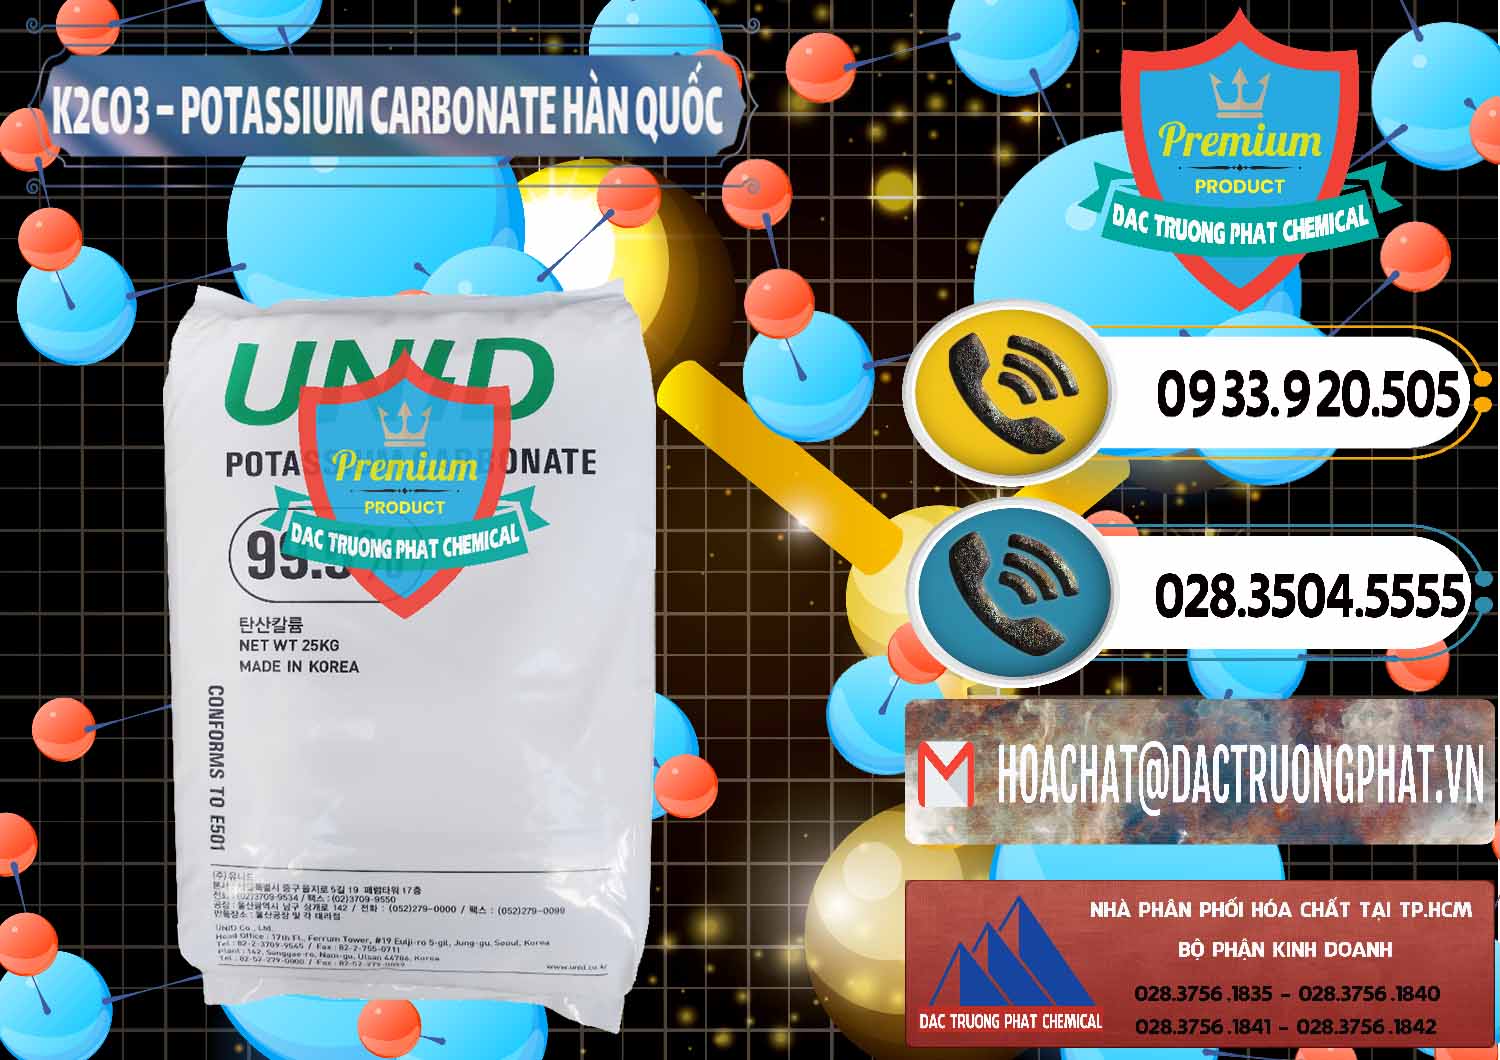 Nơi chuyên bán & cung cấp K2Co3 – Potassium Carbonate Unid Hàn Quốc Korea - 0081 - Công ty chuyên cung cấp ( kinh doanh ) hóa chất tại TP.HCM - hoachatdetnhuom.vn